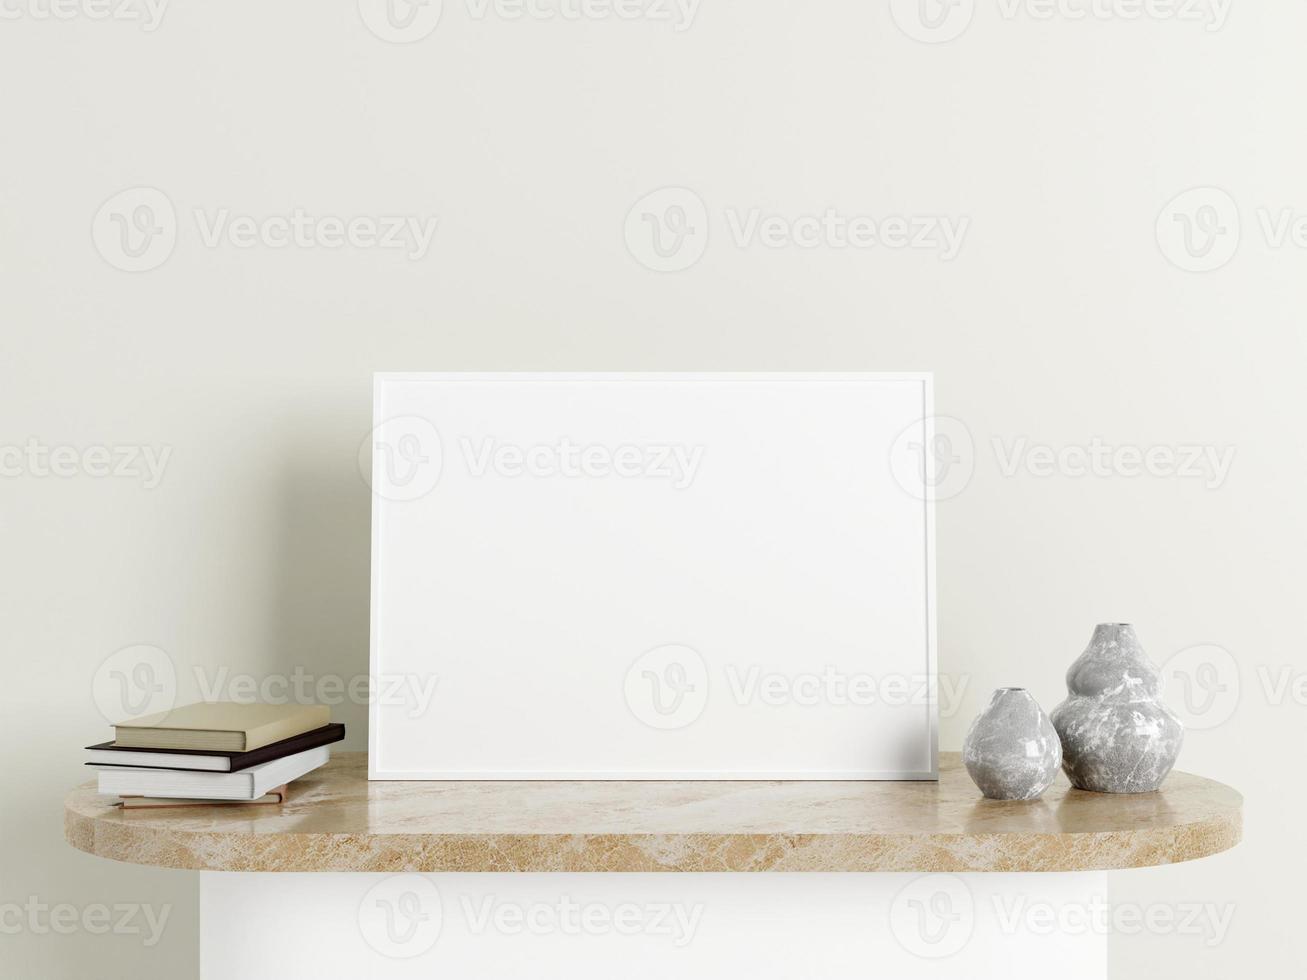 cartaz branco horizontal minimalista ou maquete de moldura na mesa de mármore com decoração foto